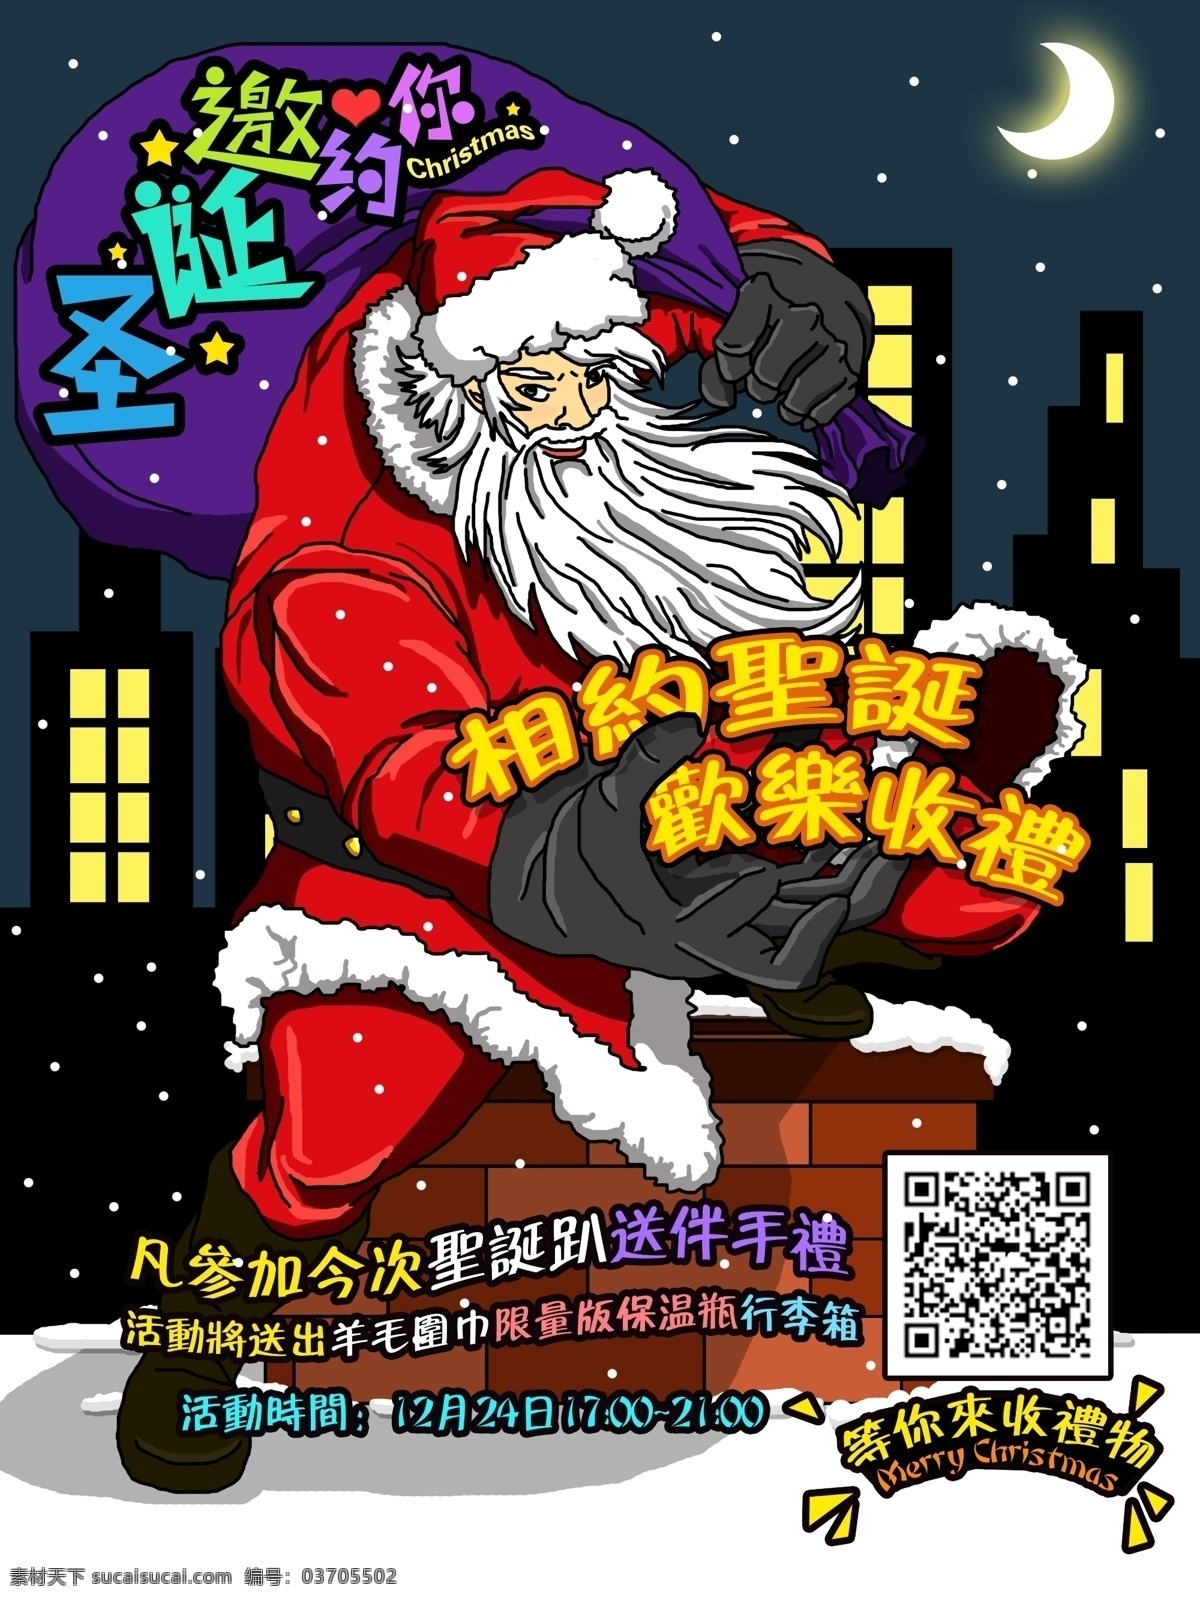 手绘 插画 圣诞老人 派 礼物 邀请 海报 宣传单 圣诞节 房子 送礼物 黑夜 下雪 派礼物 活动